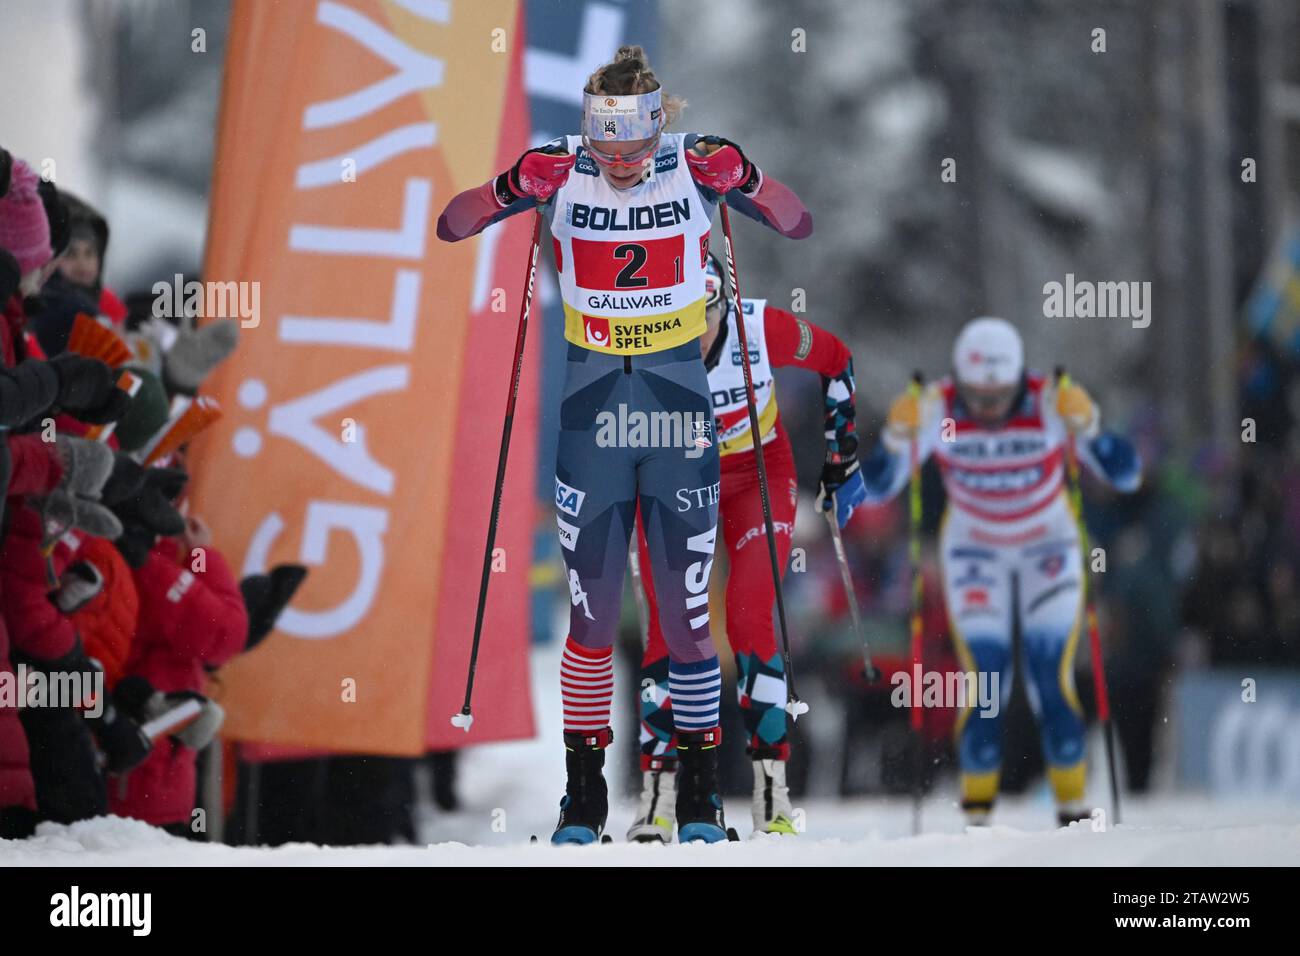 Jessie Diggins, USA, während der 4x7,5 km-Staffel der Frauen bei den FIS Cross-Country-Weltmeisterschaften in Gallivare, Schweden, 03. Dezember 2023.Foto: Ulf Palm / TT / kod 9110 Stockfoto